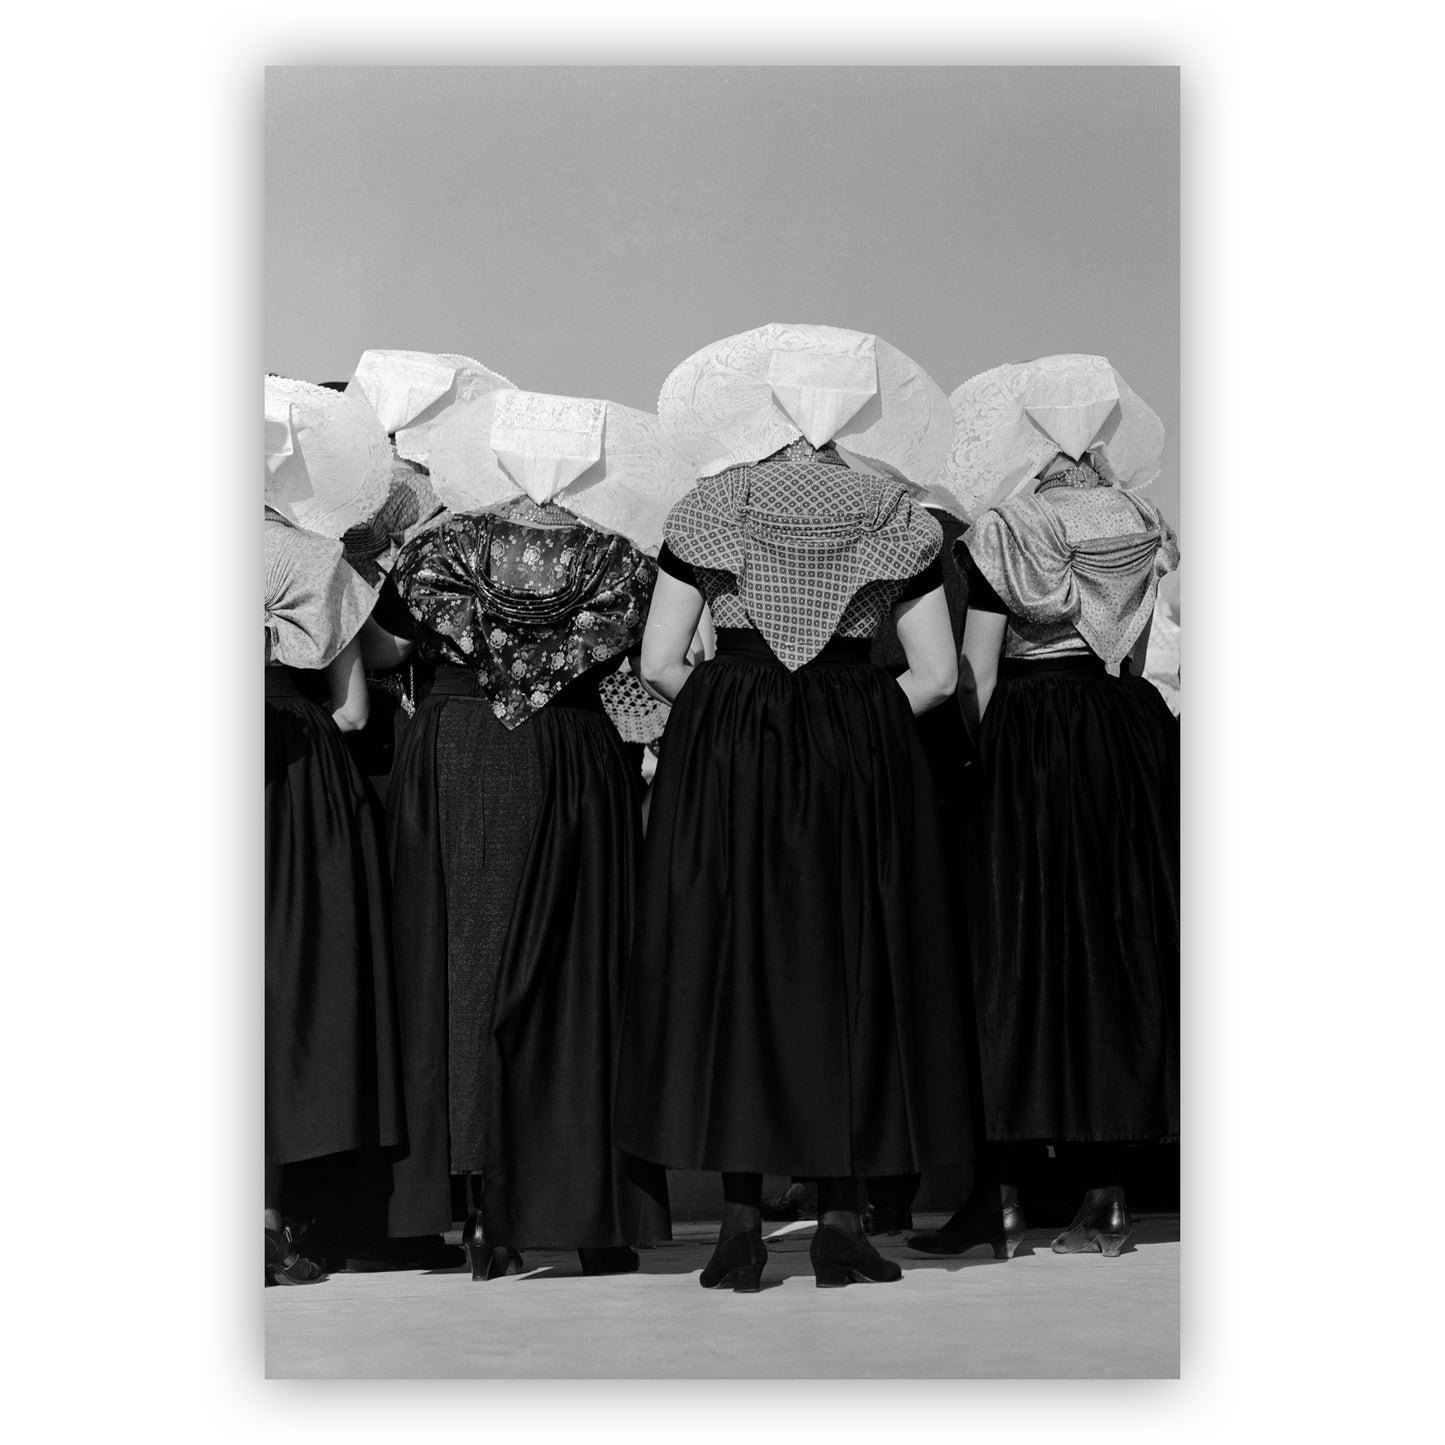 Vrouwen met protestantse klederdracht, Cas Oorthuys